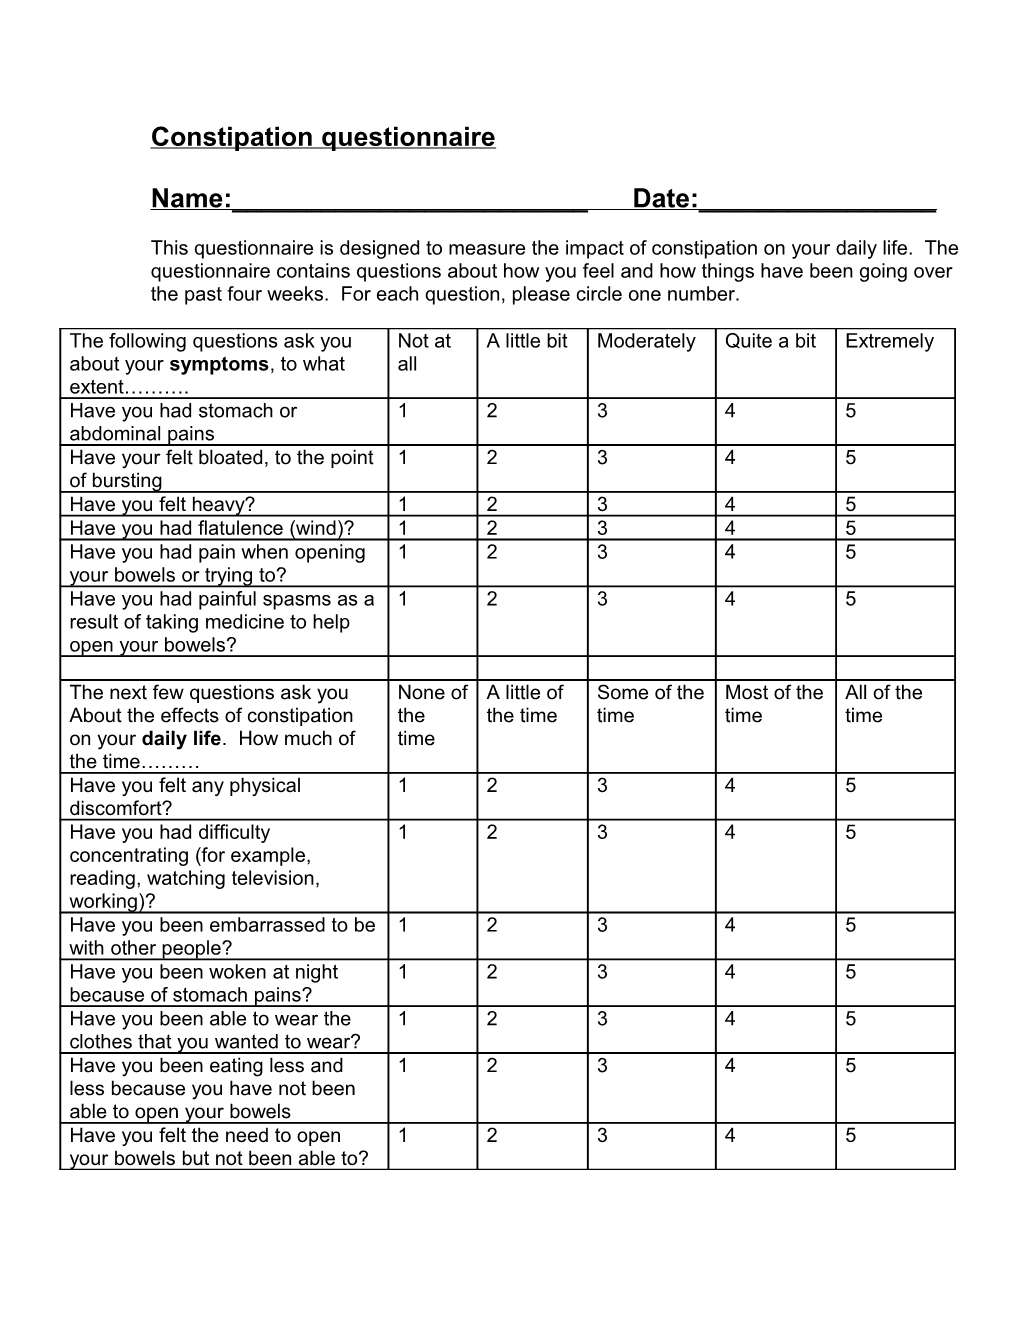 Constipation Questionnaire